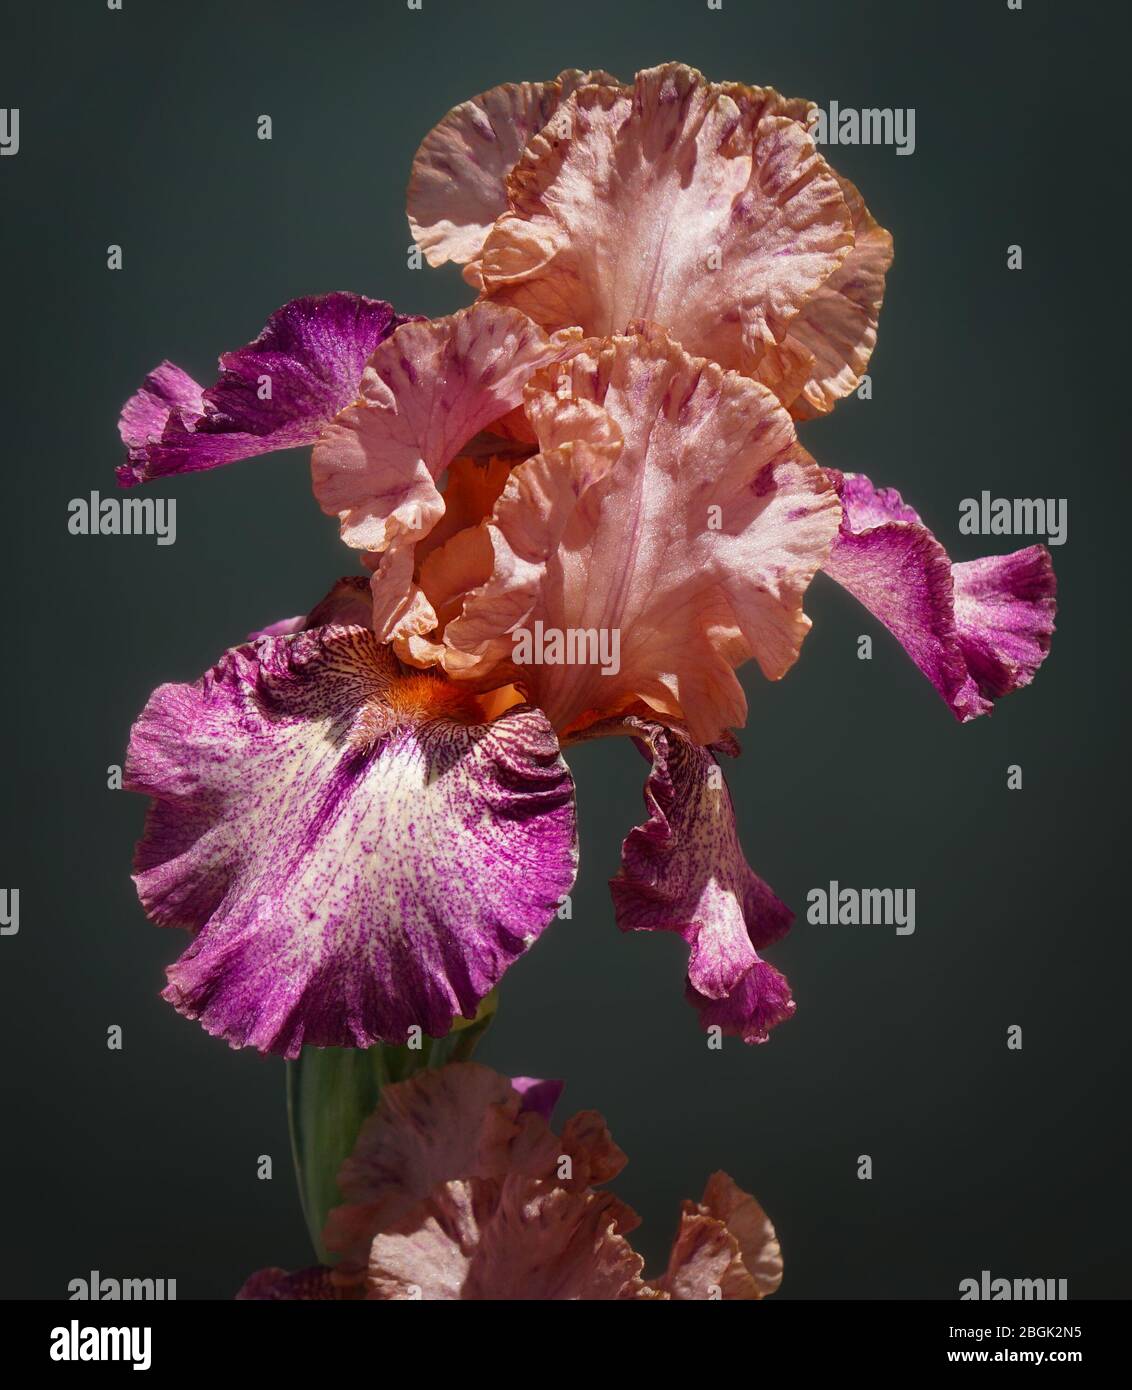 Primer plano de una hermosa durazno y flor de iris magenta con sus elegantes pétalos de frilly. Foto de stock